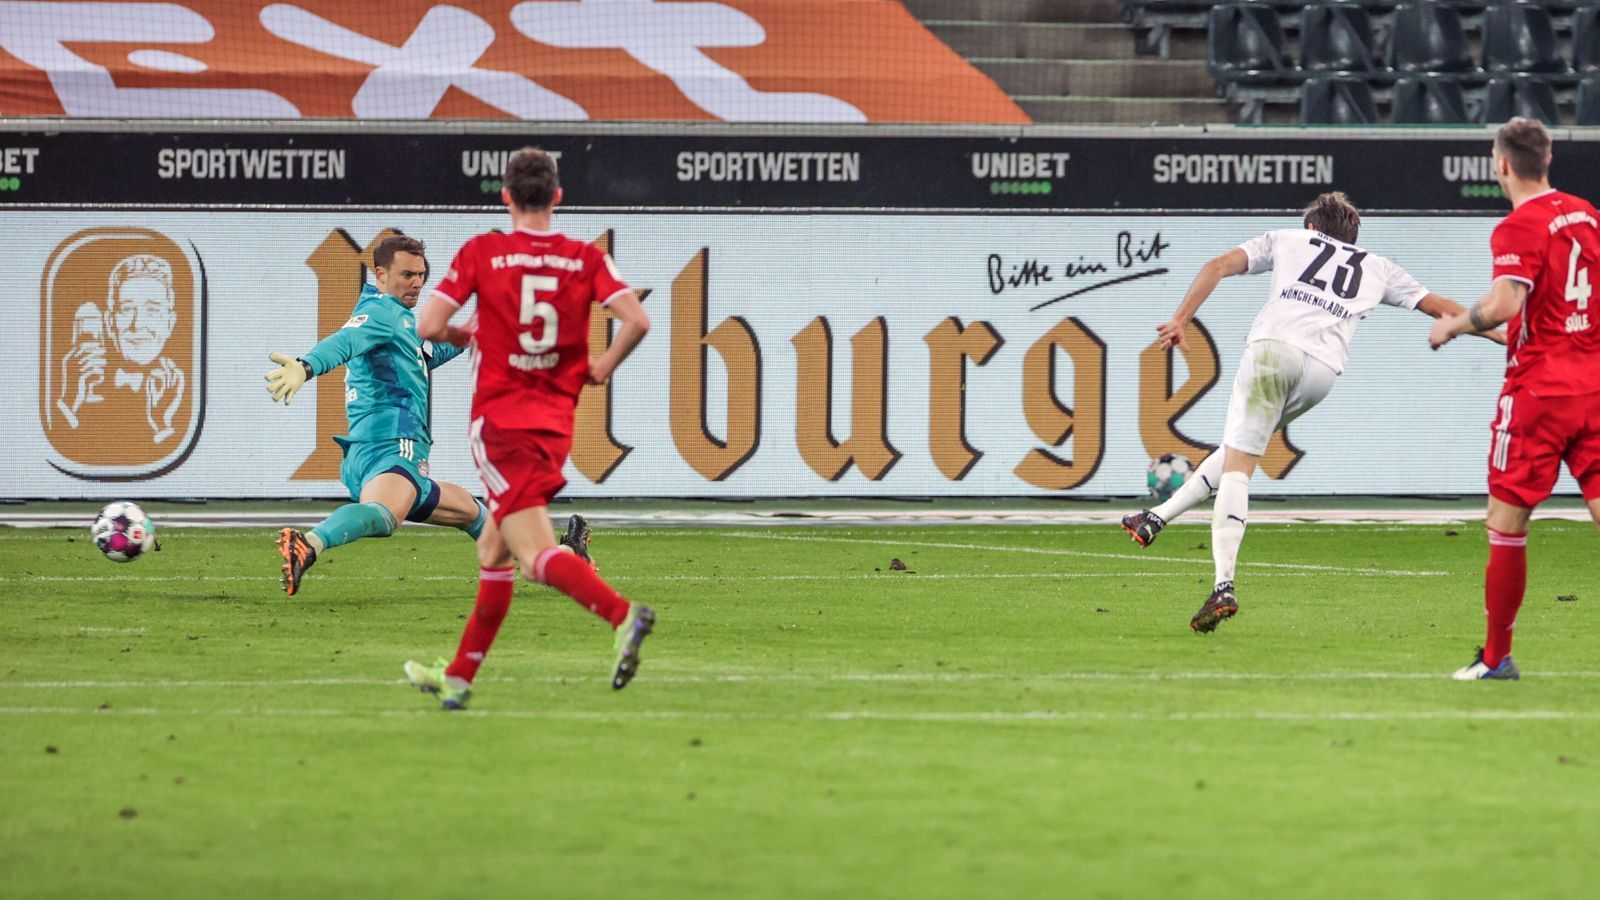 
                <strong>Bereits drei Mal drei Gegentreffer kassiert</strong><br>
                In Gladbach kassierte Neuer schon zum dritten Mal in der laufenden Spielzeit drei Gegentreffer in einer Bundesliga-Begegnung. Vor der Pleite bei der Borussia war dies schon beim 4:3-Sieg gegen die Hertha und beim 3:3-Unentschieden gegen Leipzig der Fall. Zum Vergleich: In der Vorsaison kassierte Neuer nur in einer einzigen Bundesliga-Begegnung mehr als zwei Gegentreffer. Das war beim 1:5 am zehnten Spieltag auswärts bei Eintracht Frankfurt. Nach dieser Schlappe wurde der damalige Trainer Niko Kovac gefeuert und sein Assistent Hansi Flick zu dessen Nachfolger ernannt.
              